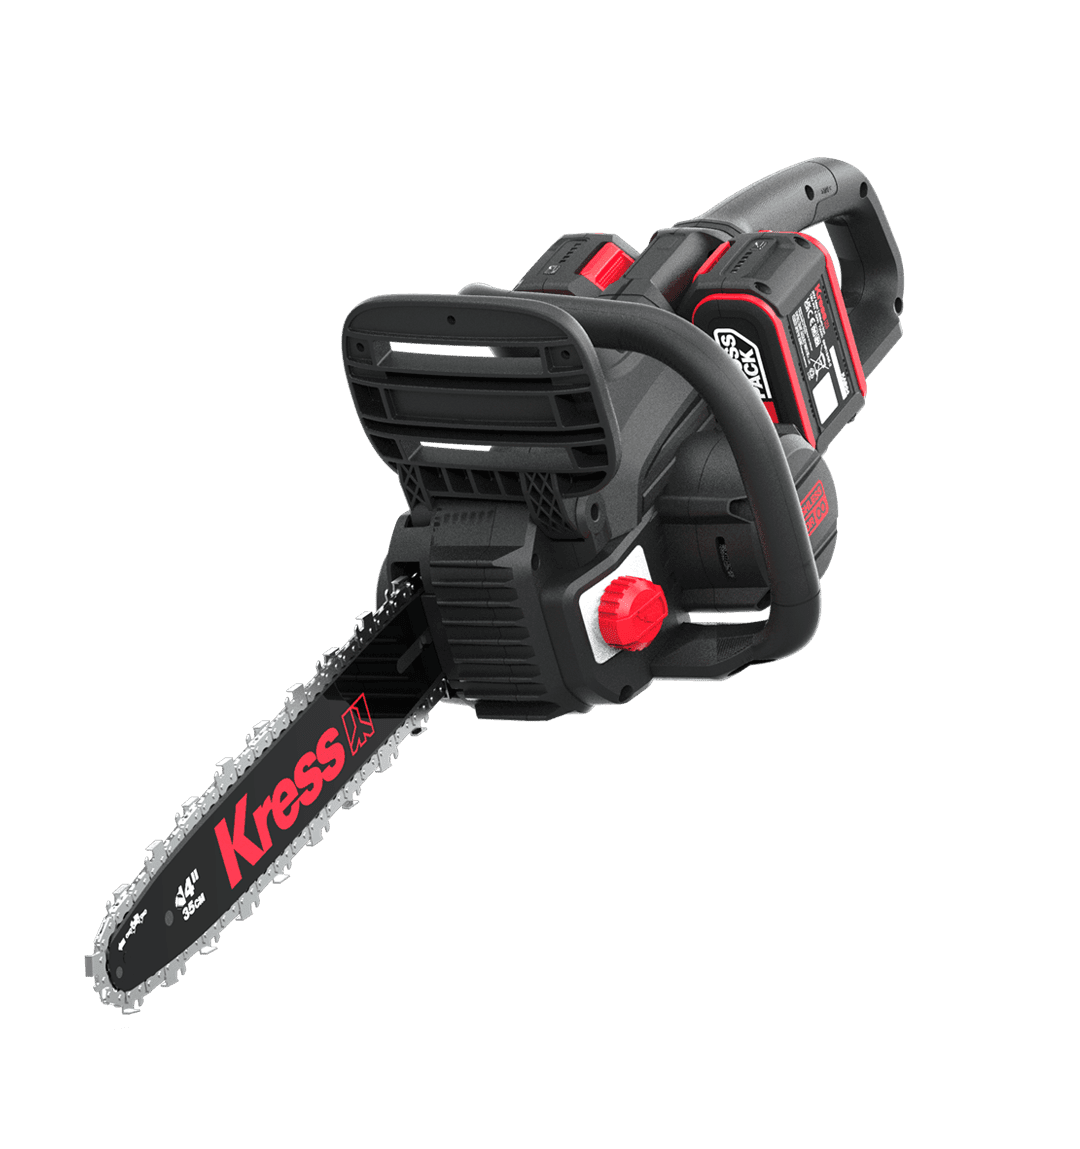 Kress Commercial  40 V 35 cm brushless chainsaw — tool only